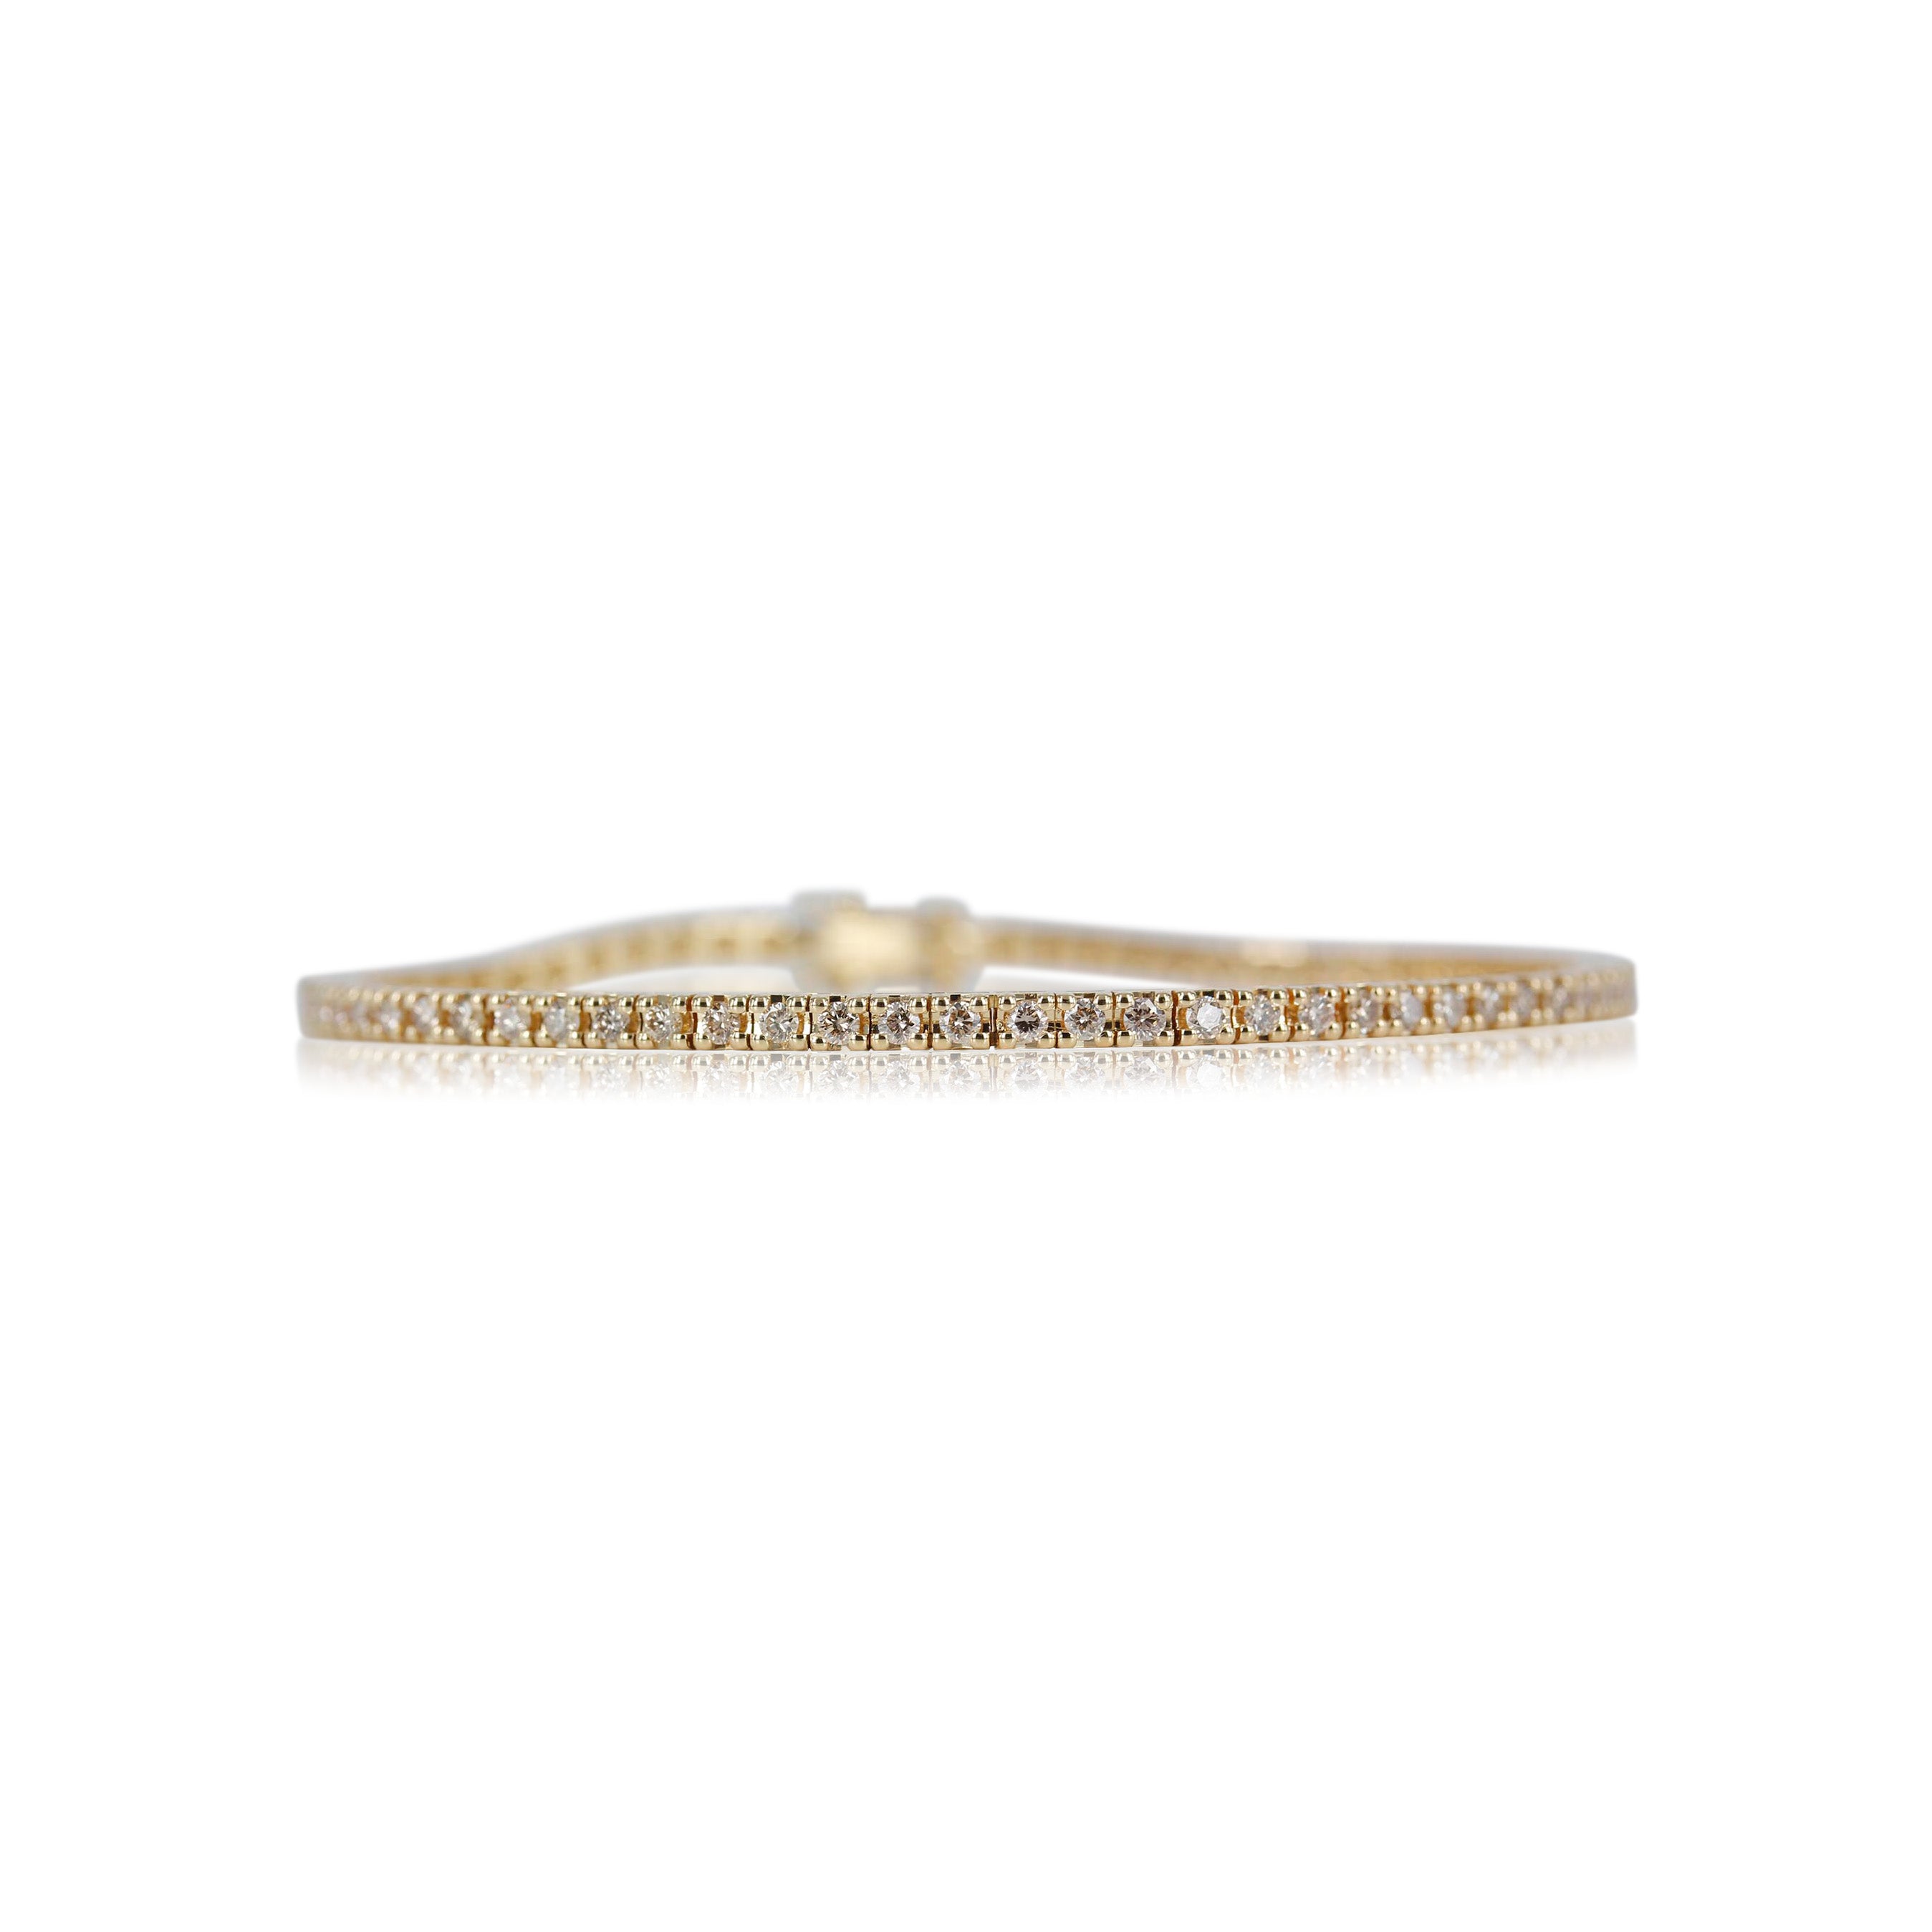 3, 18 kt. guld Tennisarmbånd med ialt 5,49 ct champagne farvet brillant slebet diamanter.   Smuk og elegant smykke der kan bæres alene eller med andre armbånd.